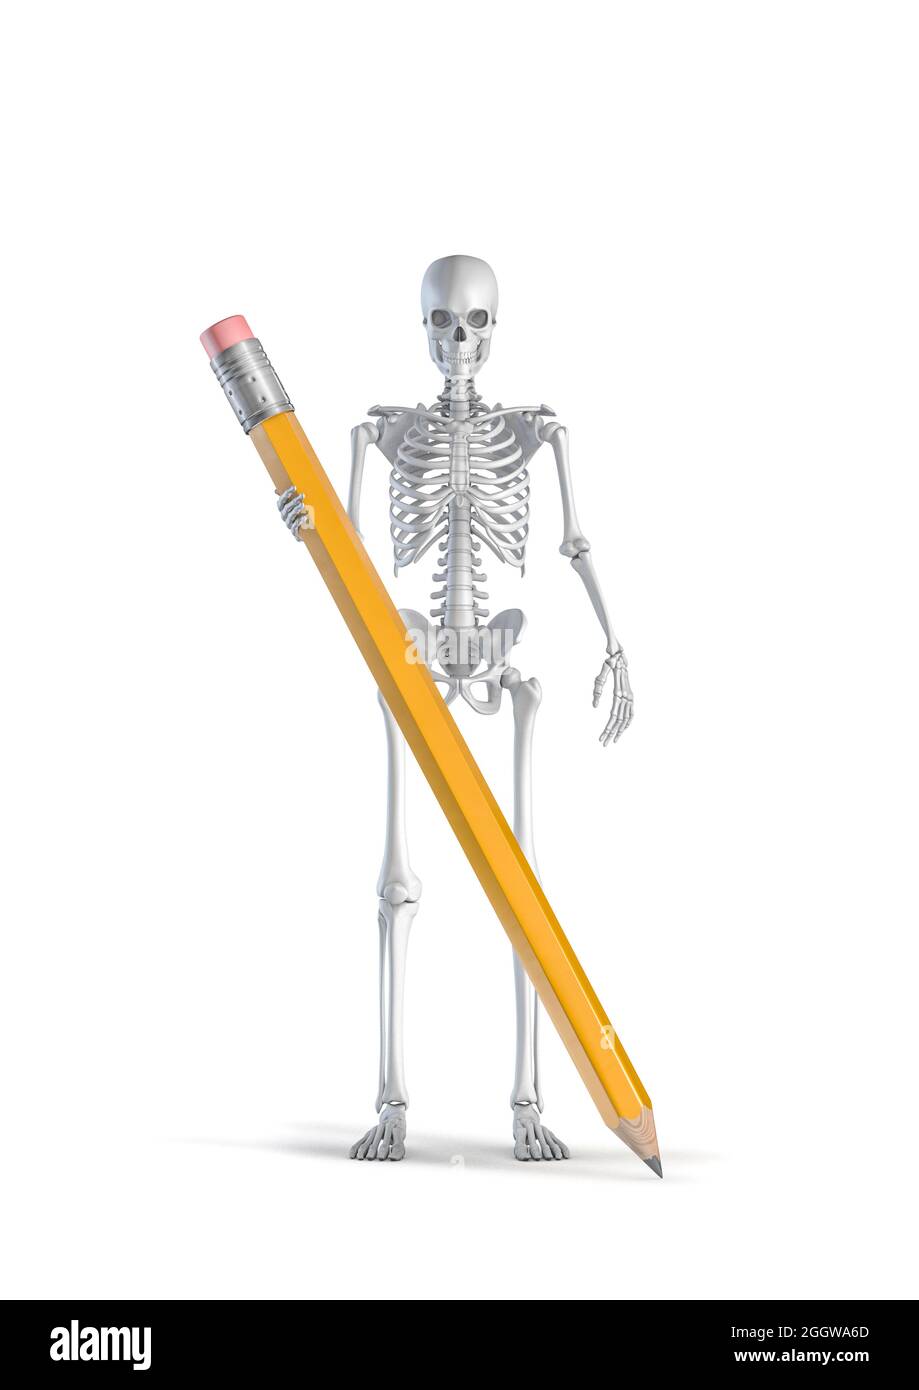 Skelett Kreativität Konzept - 3D-Illustration der männlichen menschlichen Skelett  Figur hält riesigen gelben Bleistift isoliert auf weißem Studio-Hintergrund  Stockfotografie - Alamy